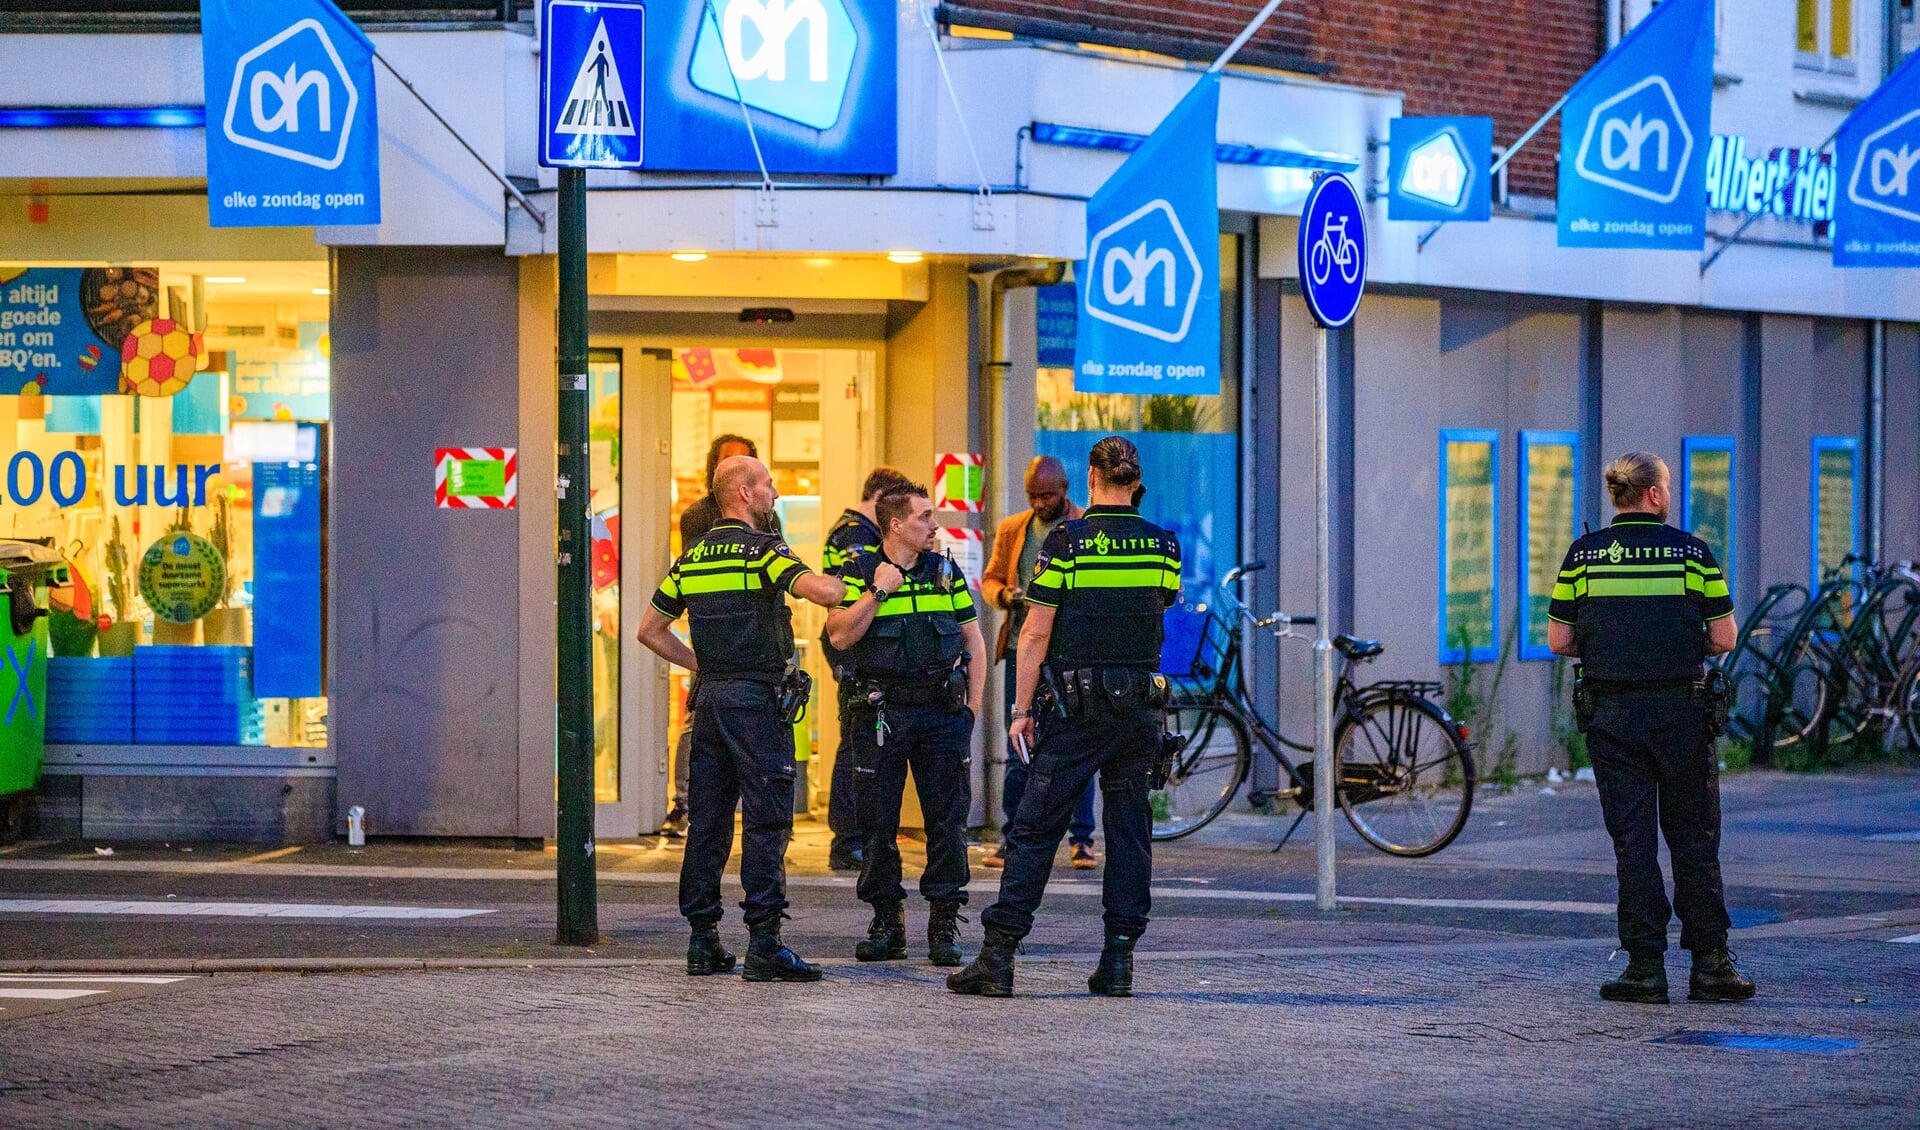 Flink wat politie op de been na de overval op de supermarkt aan de Gijsbrecht van Amstelstraat in juli.